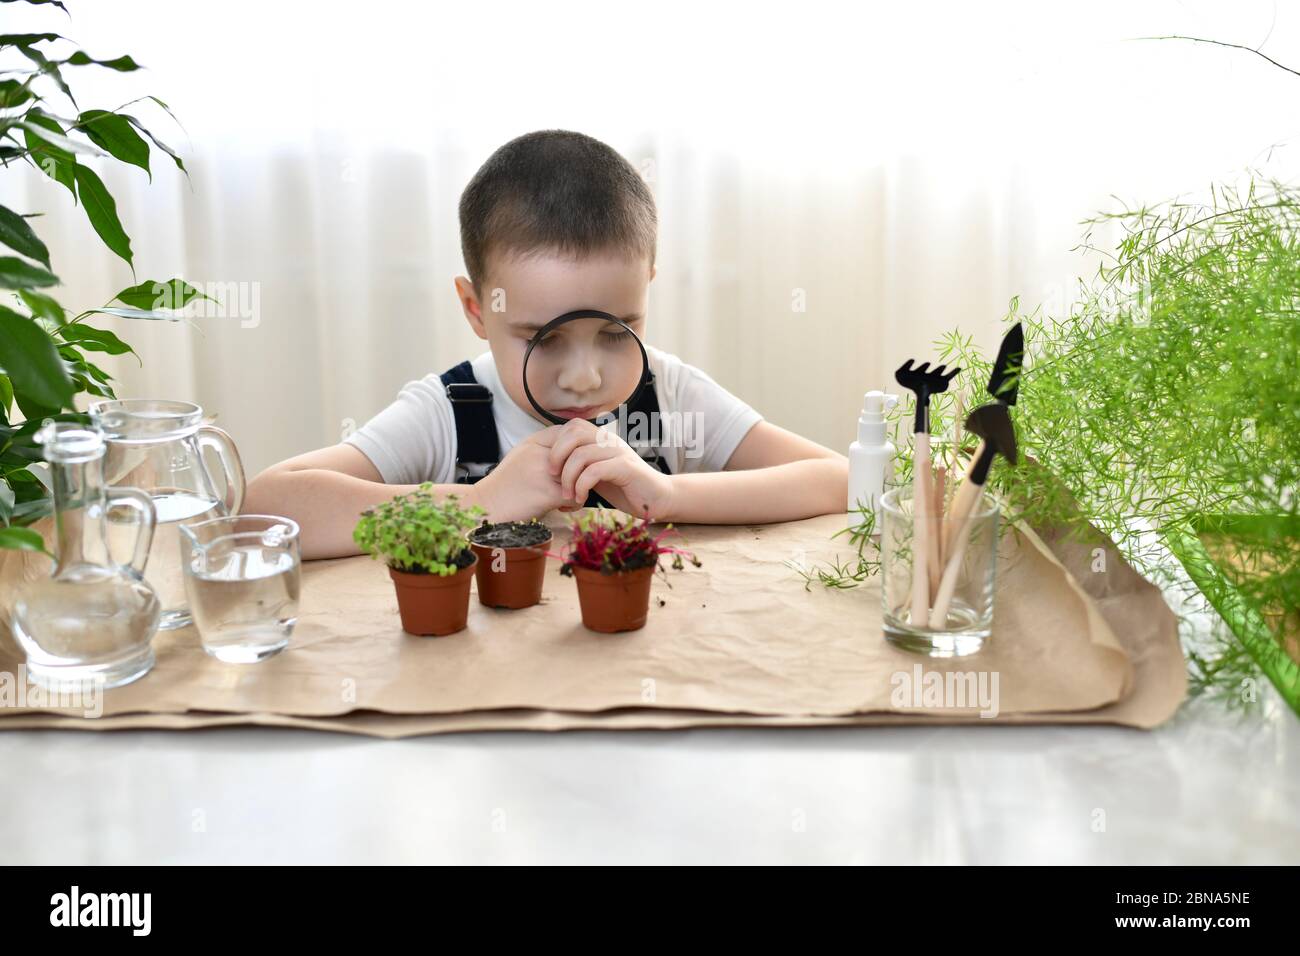 Das Kind sitzt mit einer Lupe vor seinem Gesicht und den Augen geschlossen vor Topfpflanzen. Stockfoto